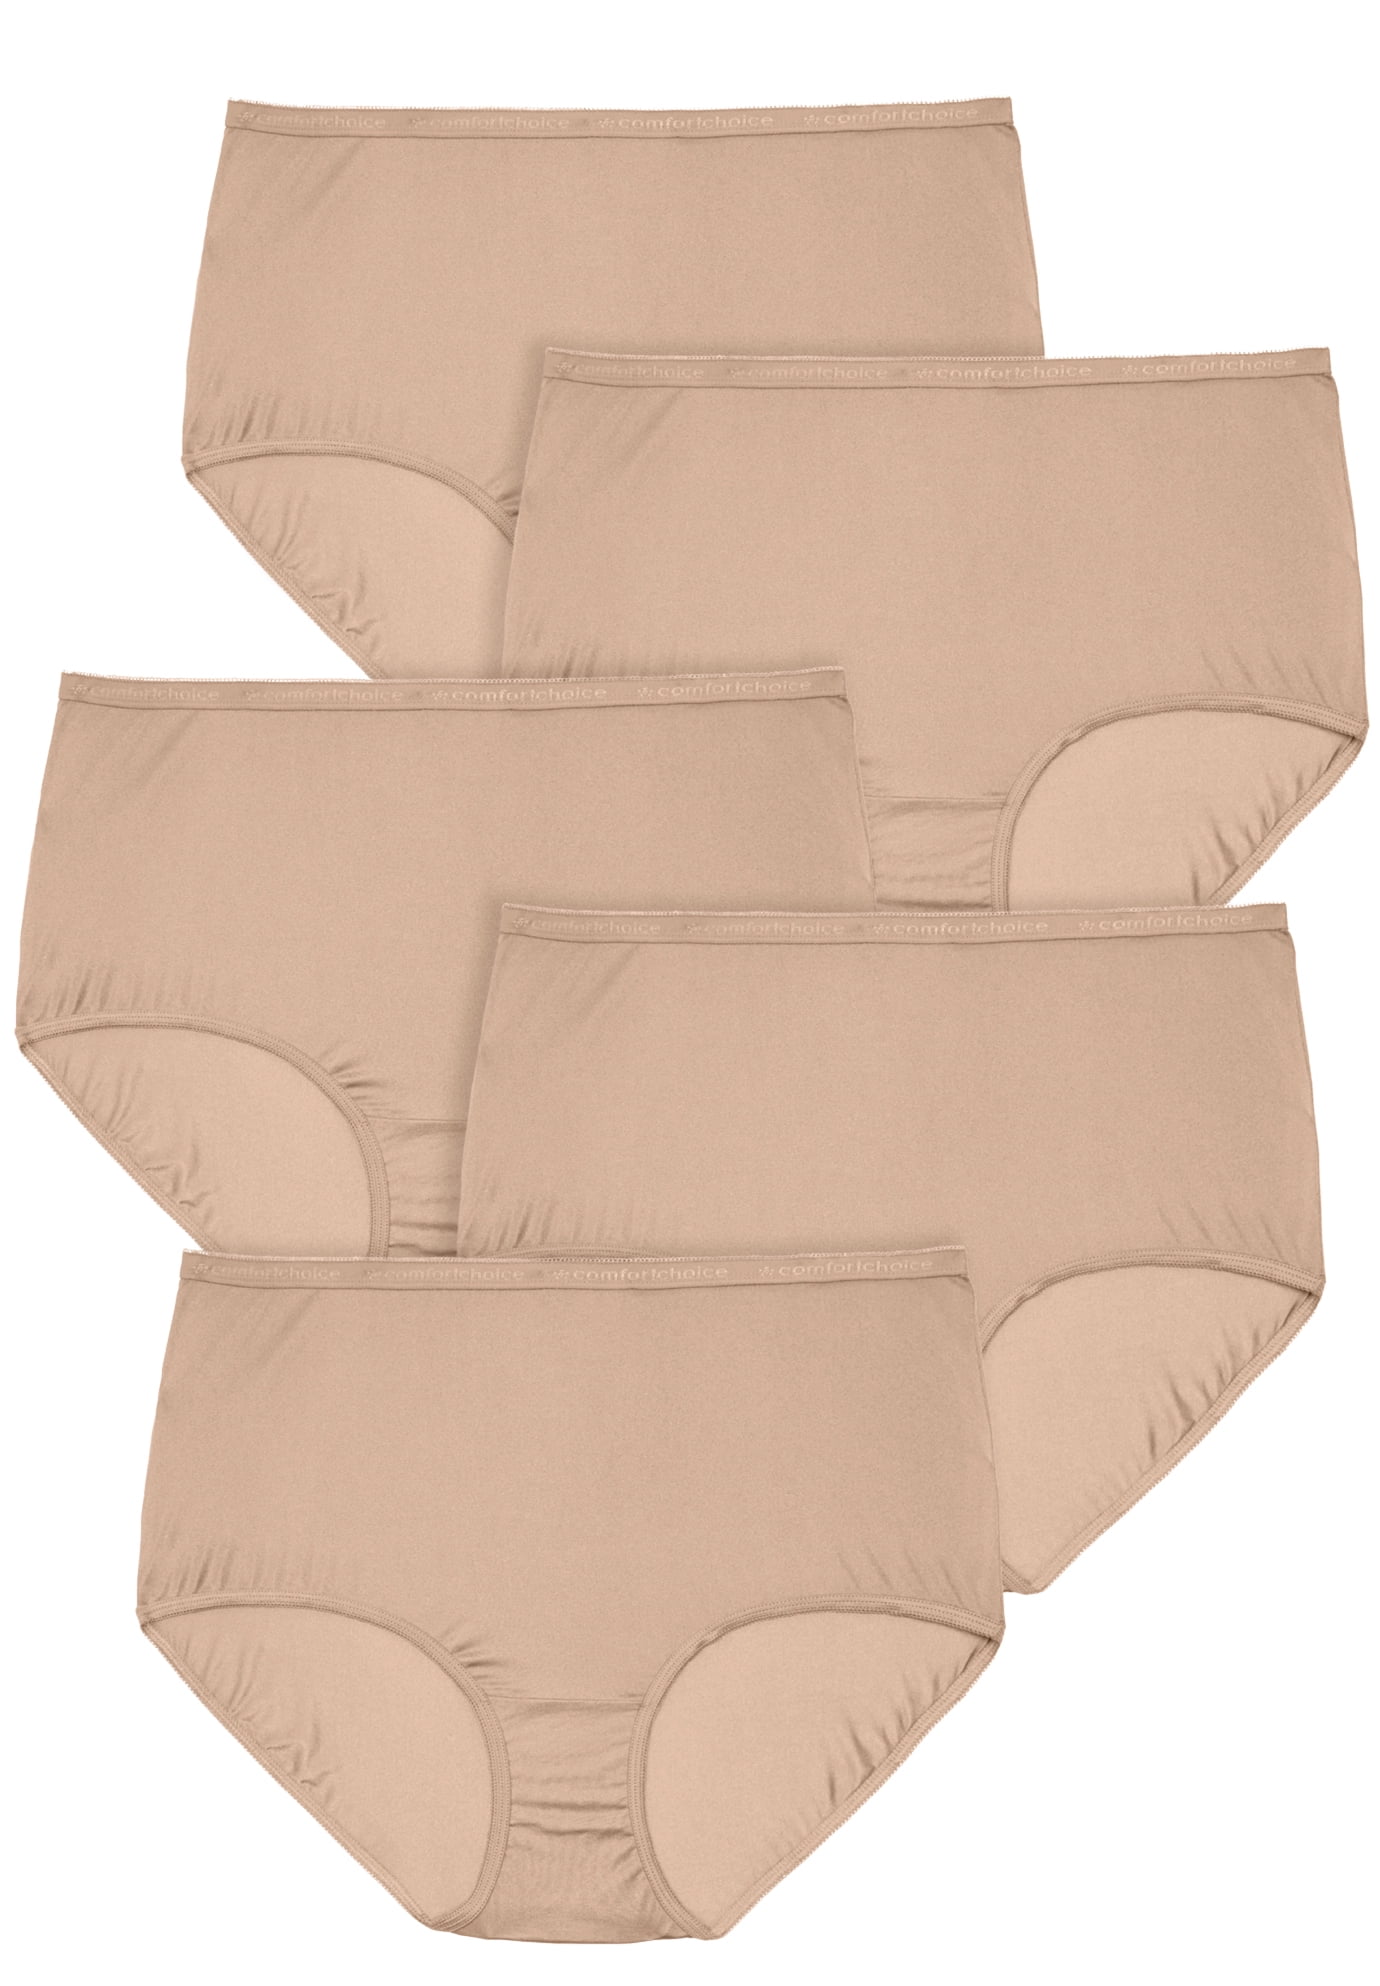 Comfort Choice Women S Plus Size Nylon Brief Pack Underwear Walmart Com